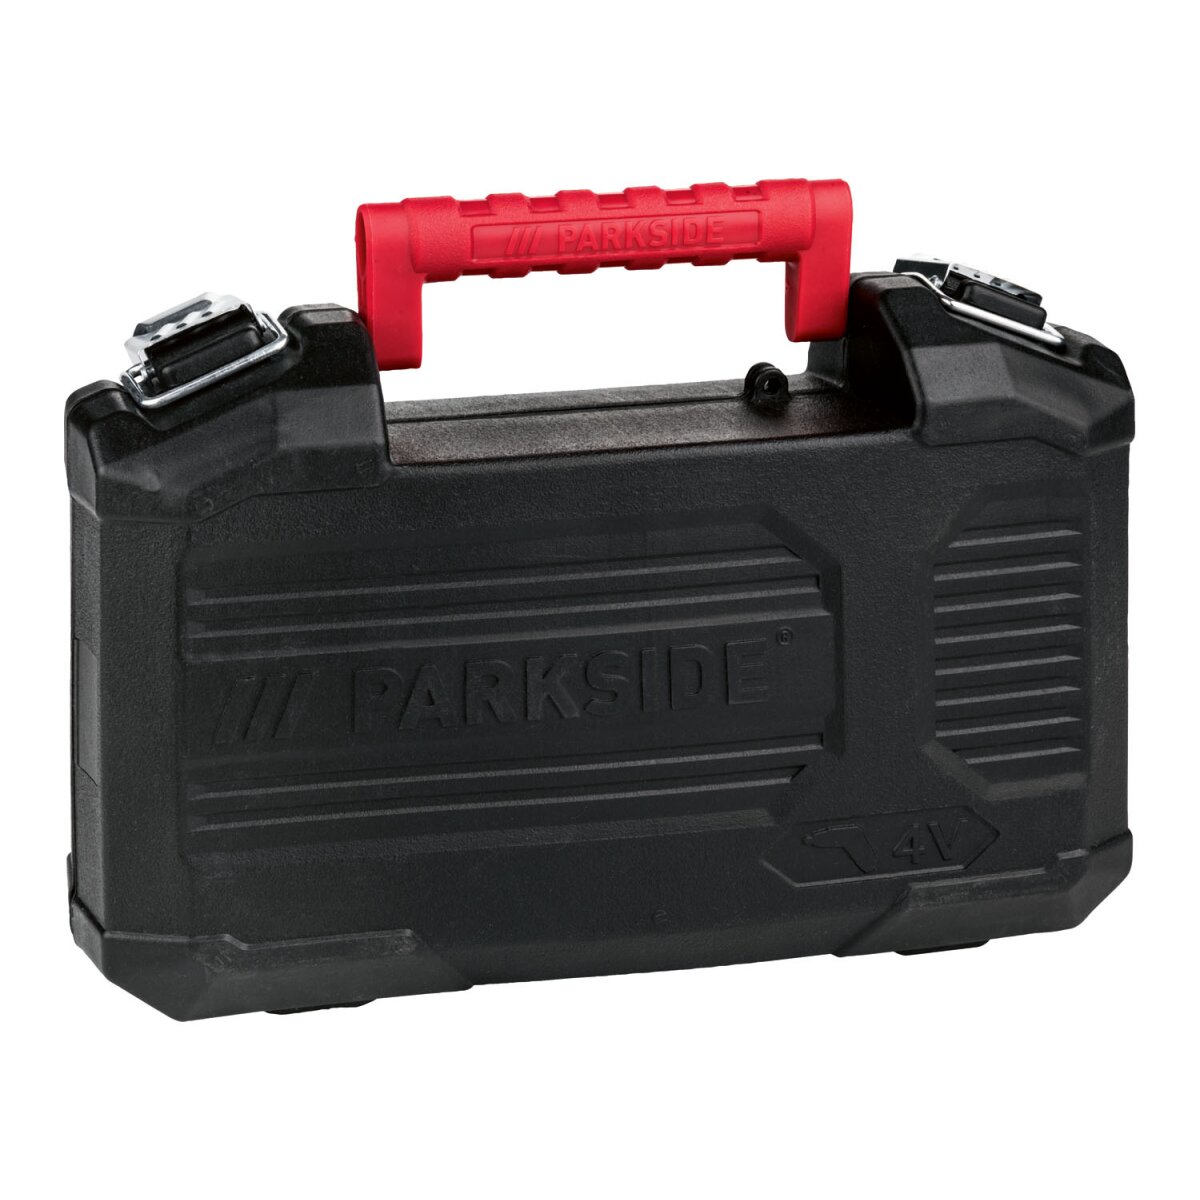 PARKSIDE® 4 V Akku-Stabschrauber »PSSA 4 B2« mit Bitset, 10 Nm - B-Ware  neuwertig, 20,99 € | Akku Werkzeug